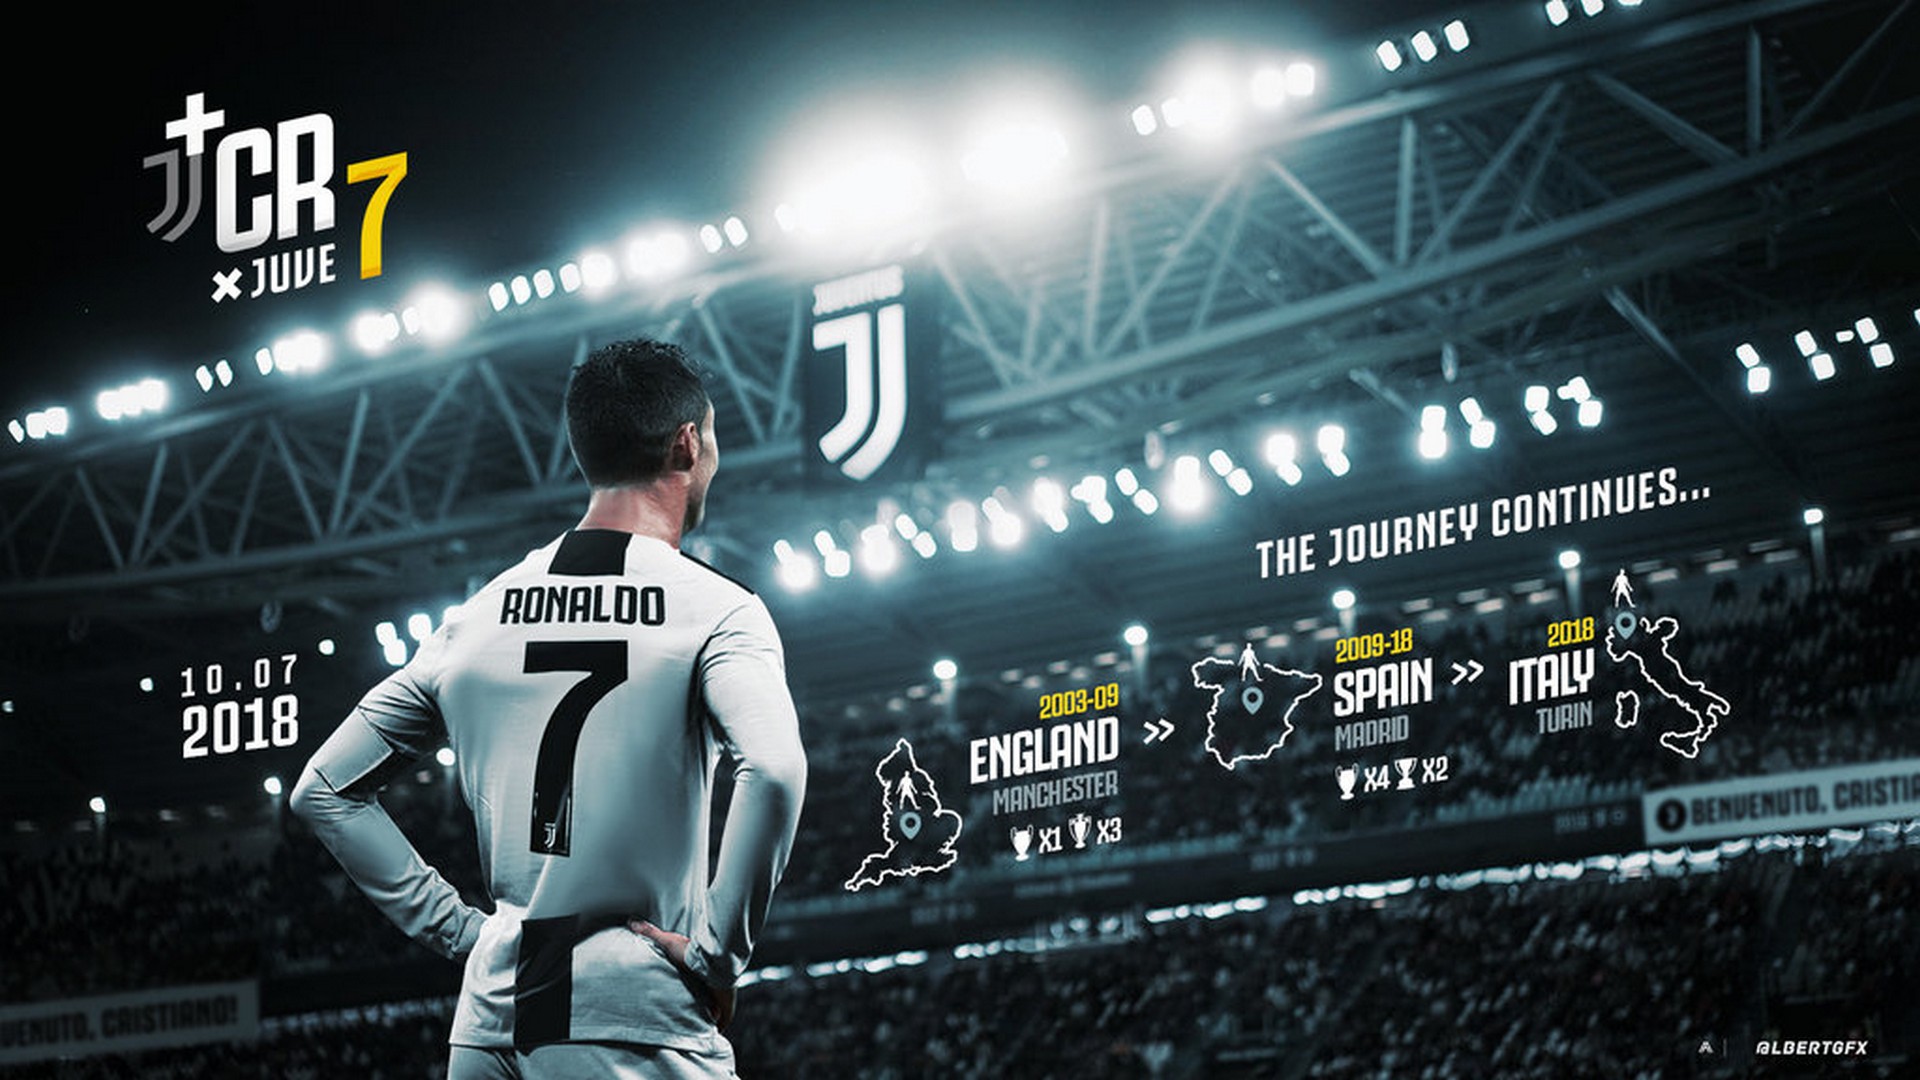 Best C Ronaldo Juventus Wallpaper Cute